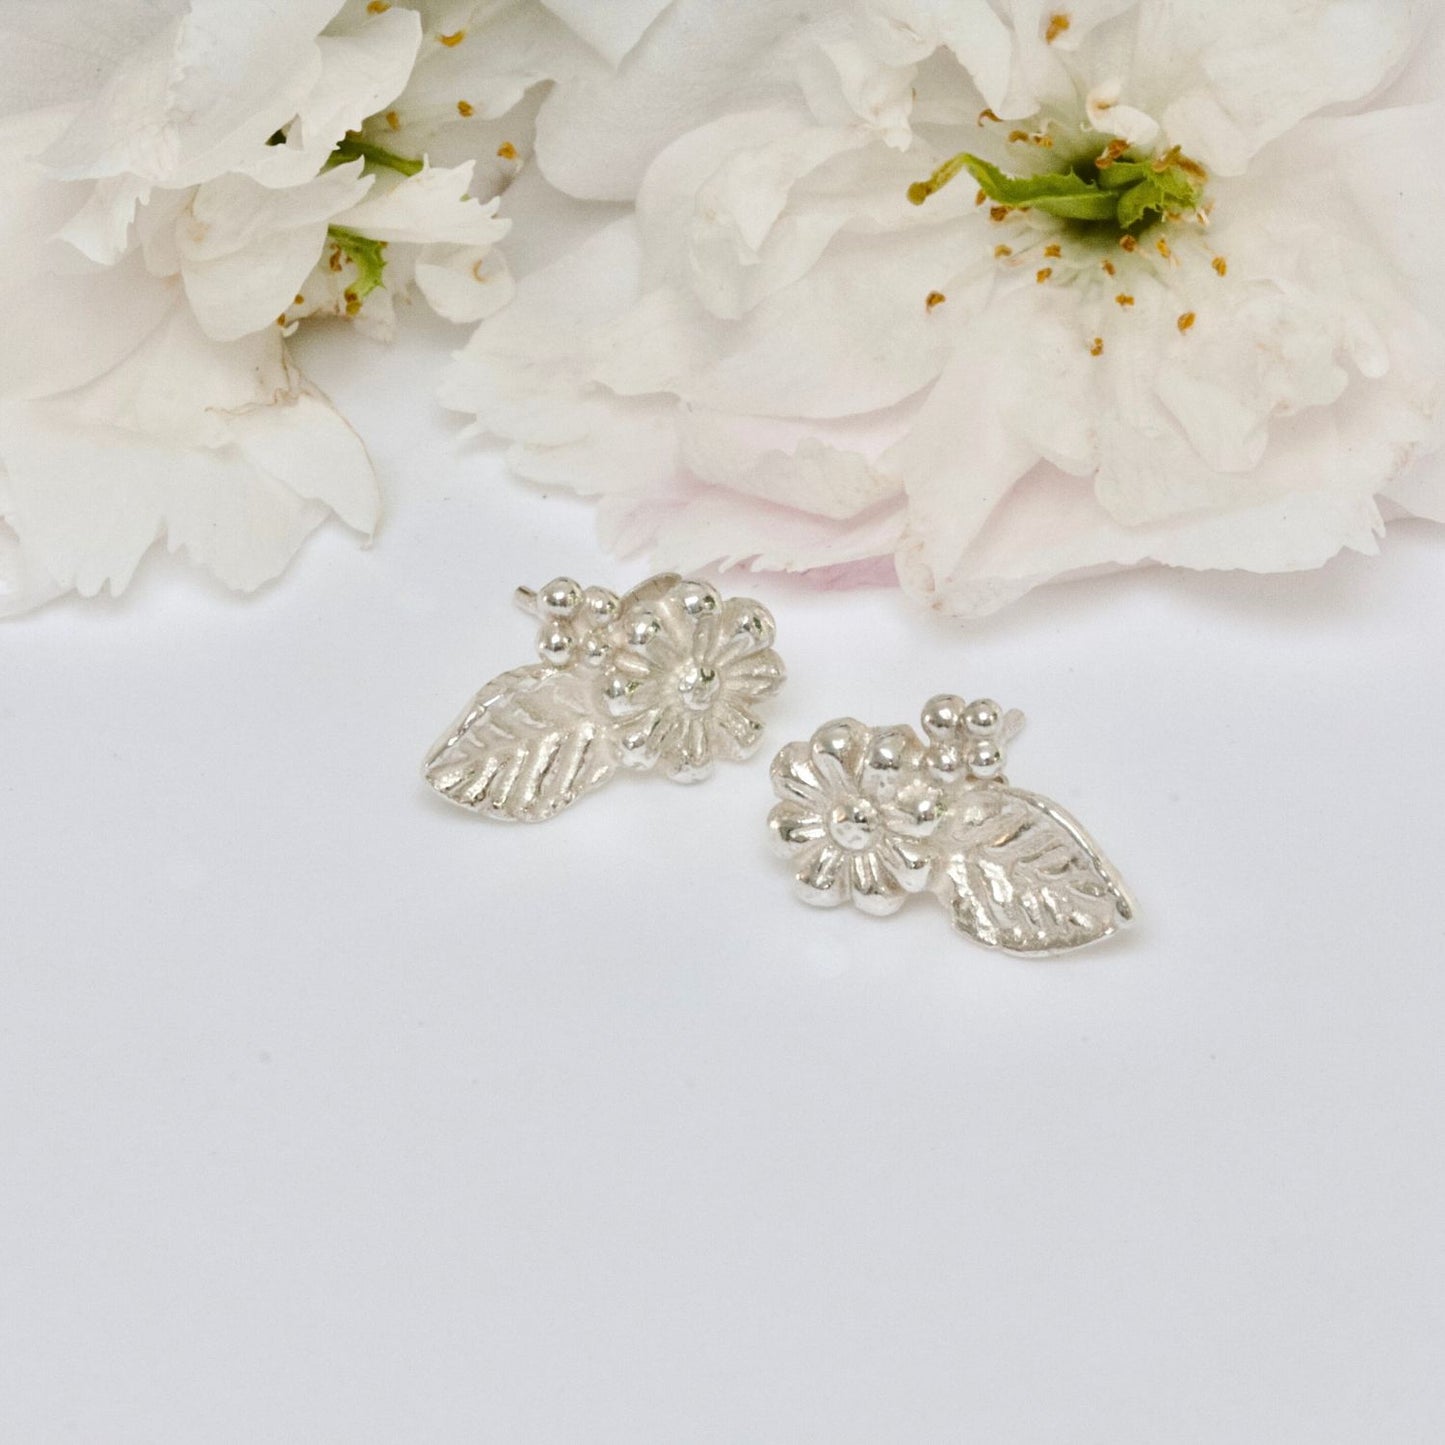 wildflower silver daisy stud earrings